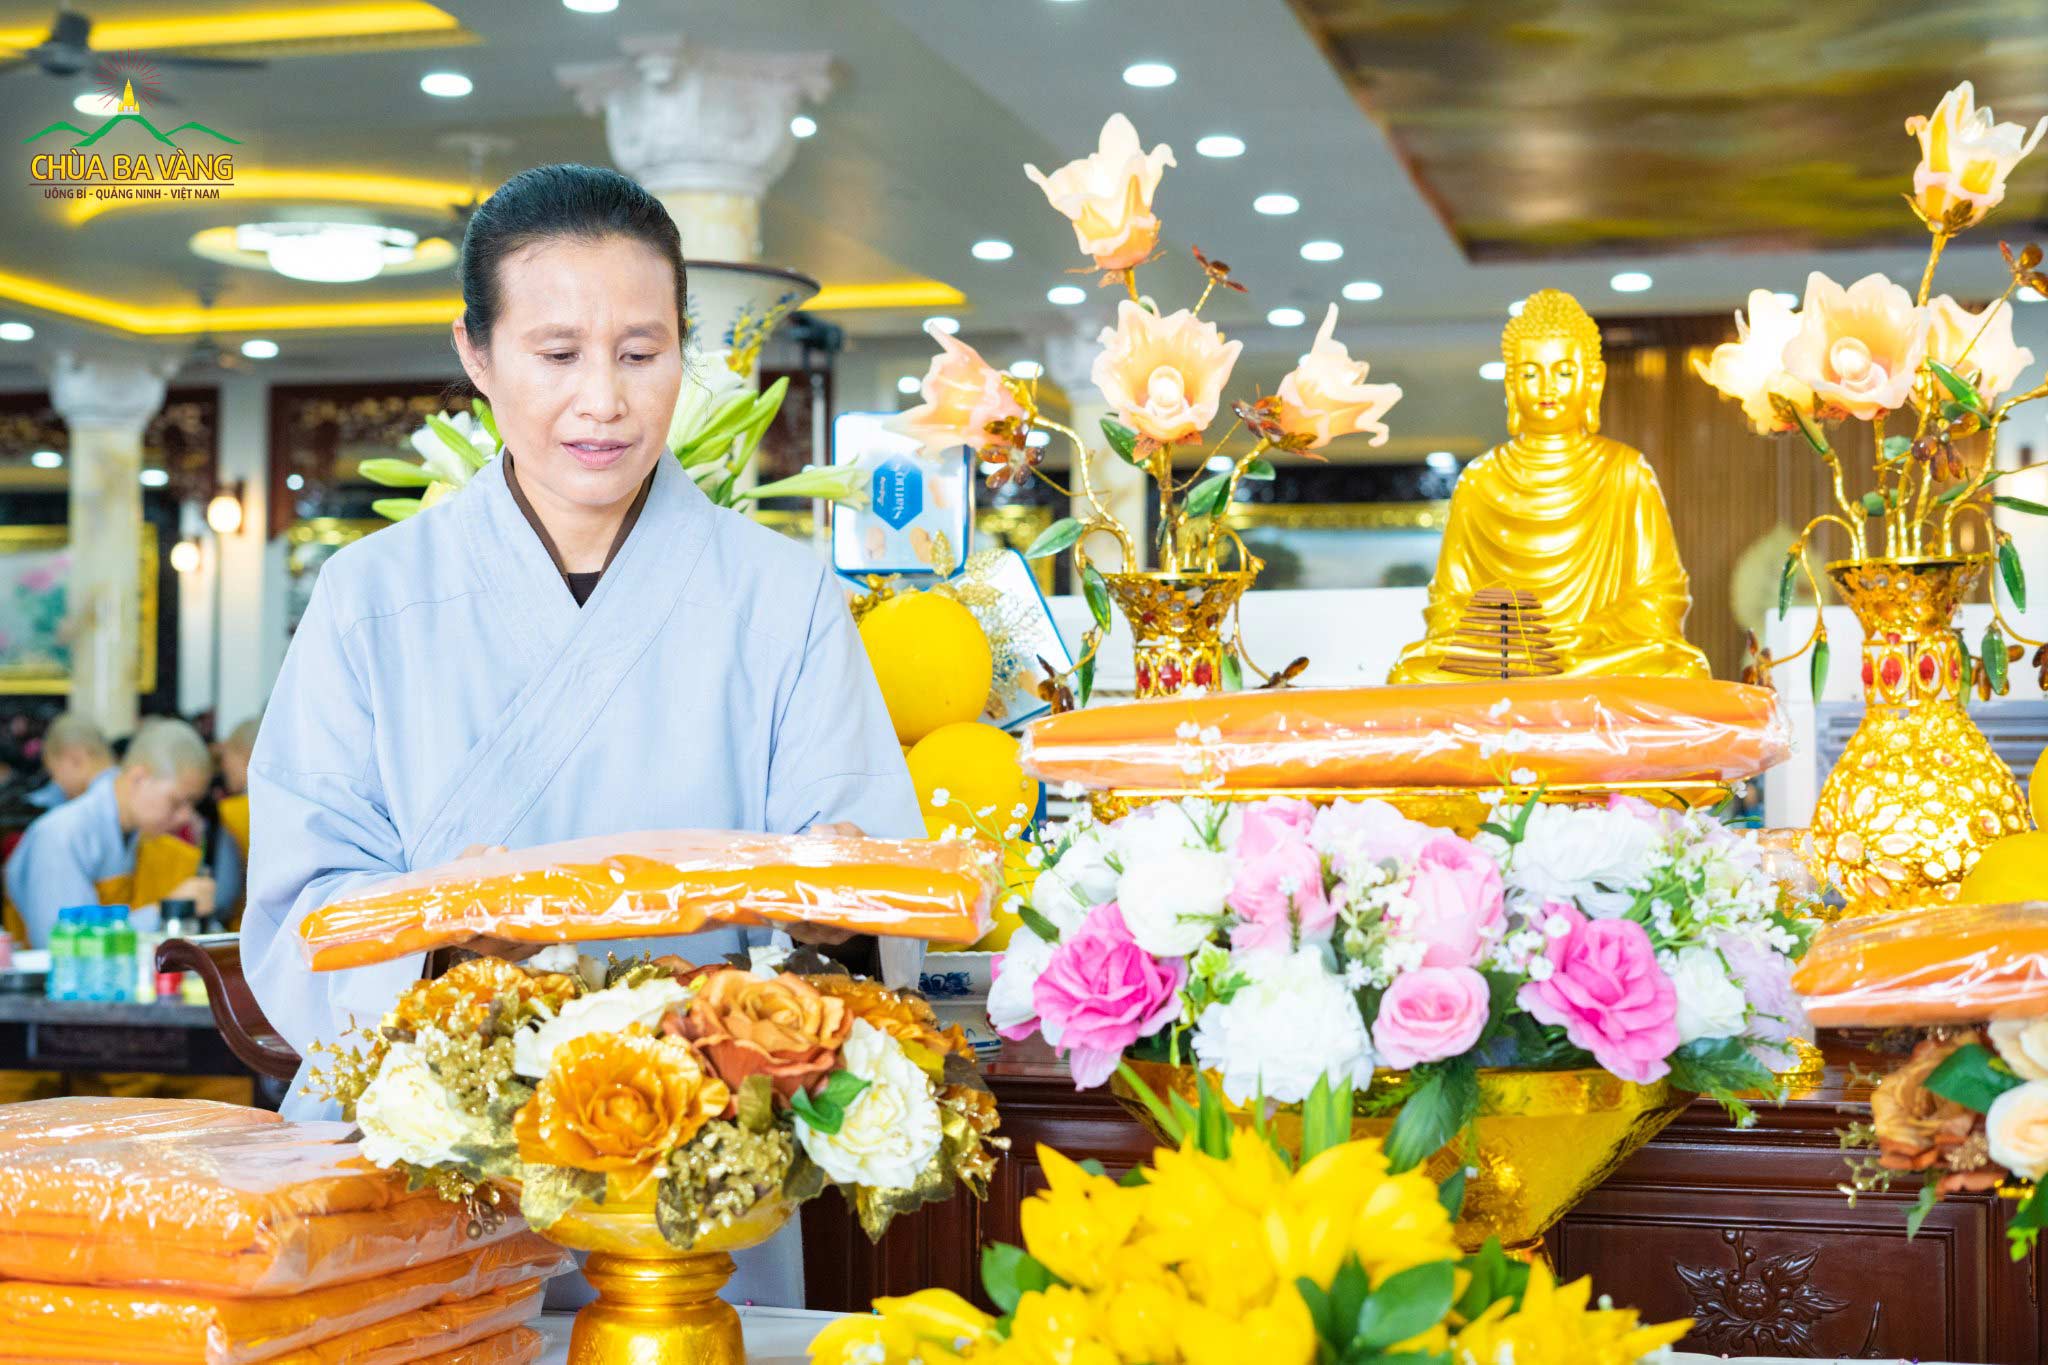 Phật tử Phạm Thị Yến (Tâm Chiếu Hoàn Quán) - Chủ nhiệm CLB Cúc Vàng chùa Ba Vàng dâng y cúng dường lên ban thờ Phật